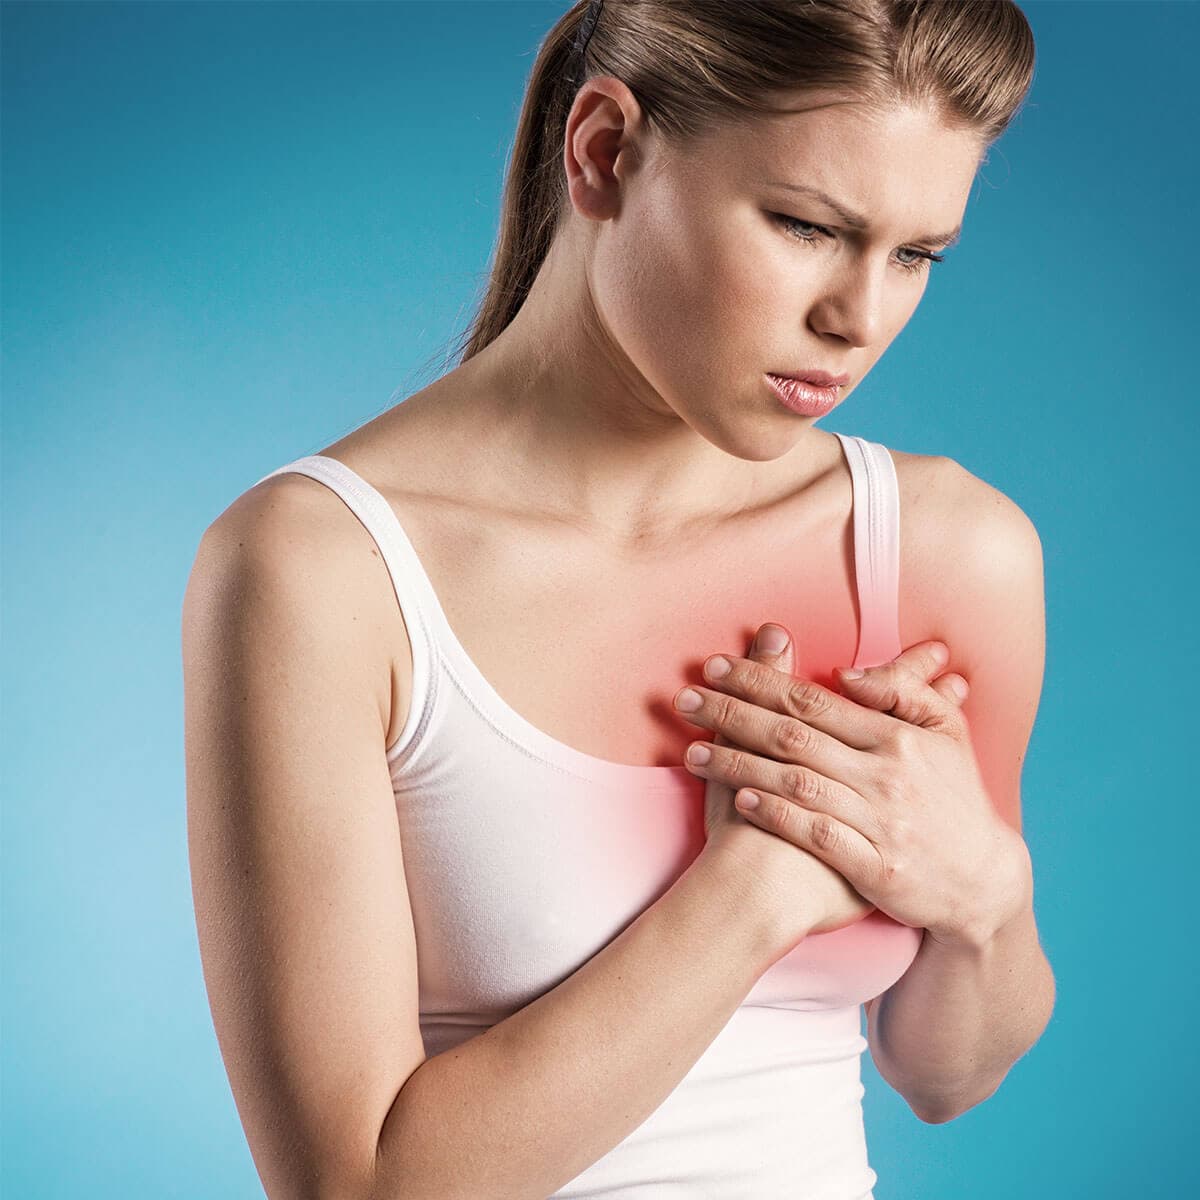 درد سینه در شیردهی – سوالات متداول